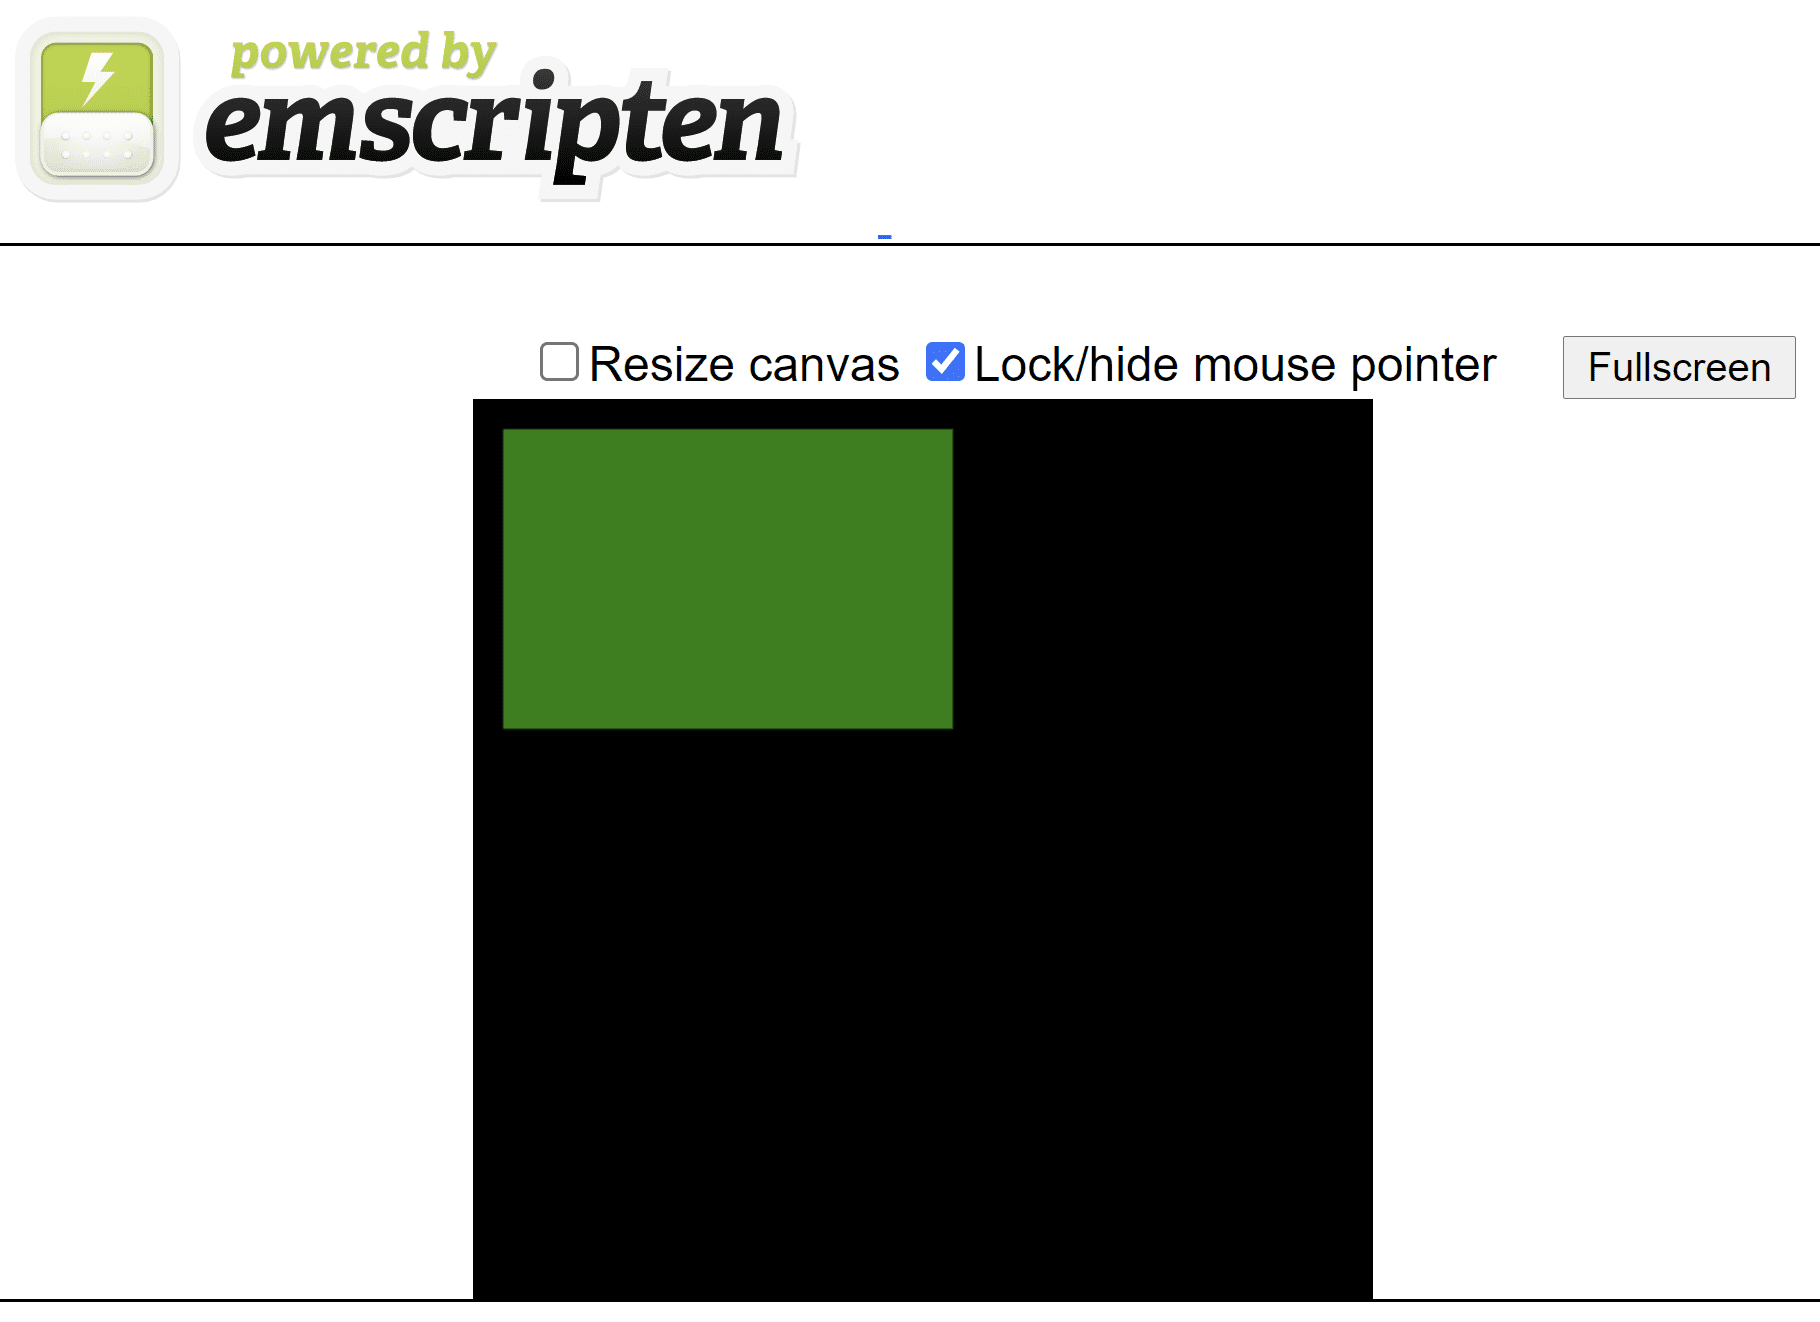 صفحه HTML ایجاد شده توسط Emscripten که یک مستطیل سبز را روی بوم مربع سیاه نشان می دهد.